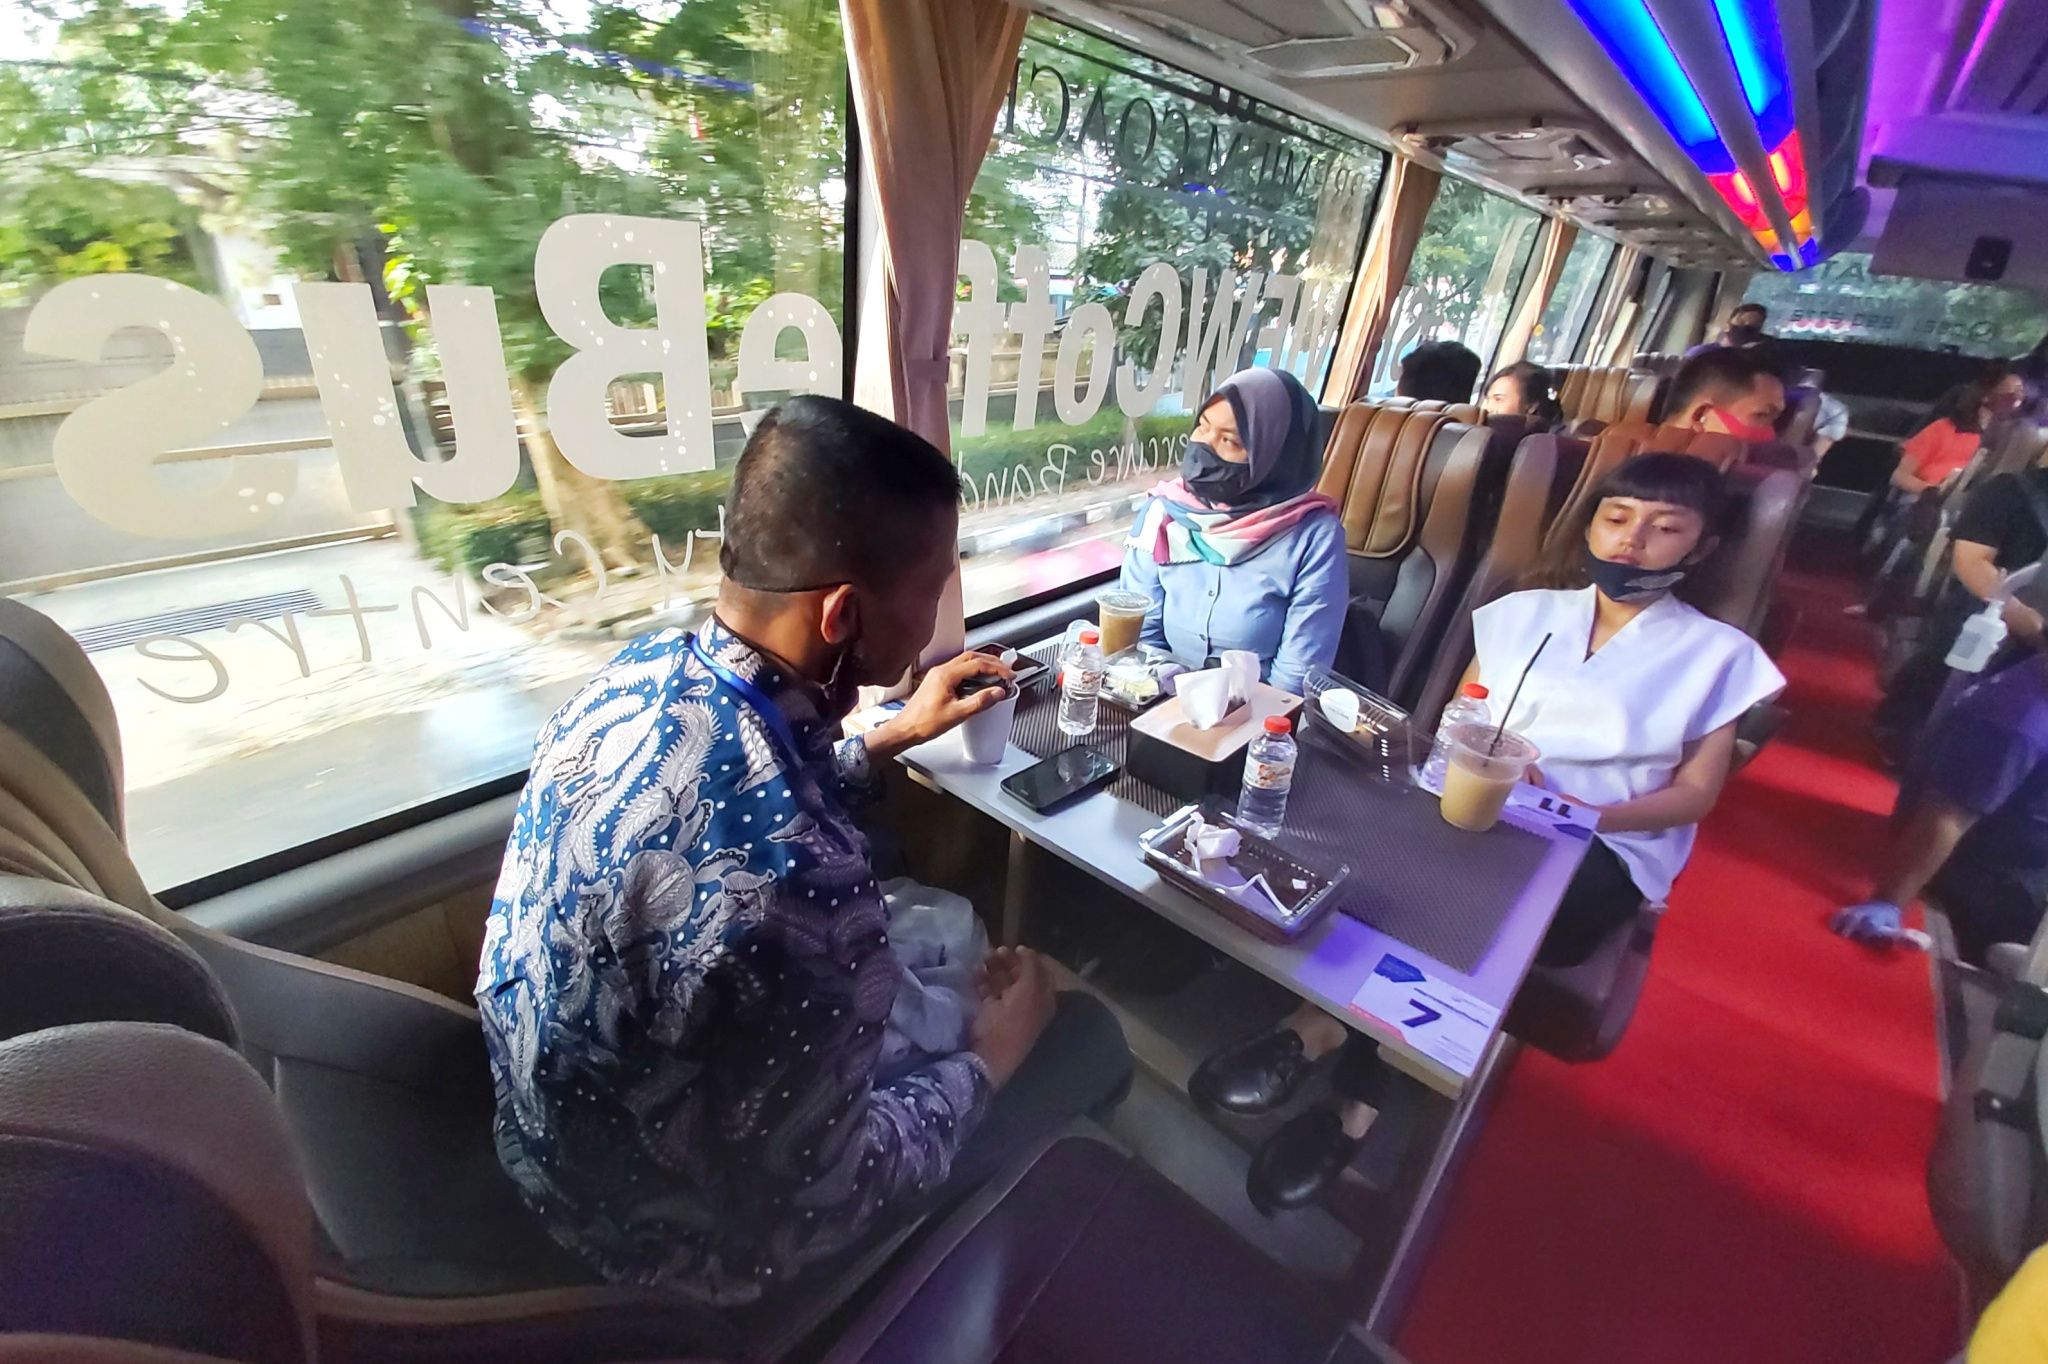 Sensasi Ngopi ala Ningrat yang dihadirkan di atas Skyview Coffee Bus Mercure Bandung City Centre yang berjalan.